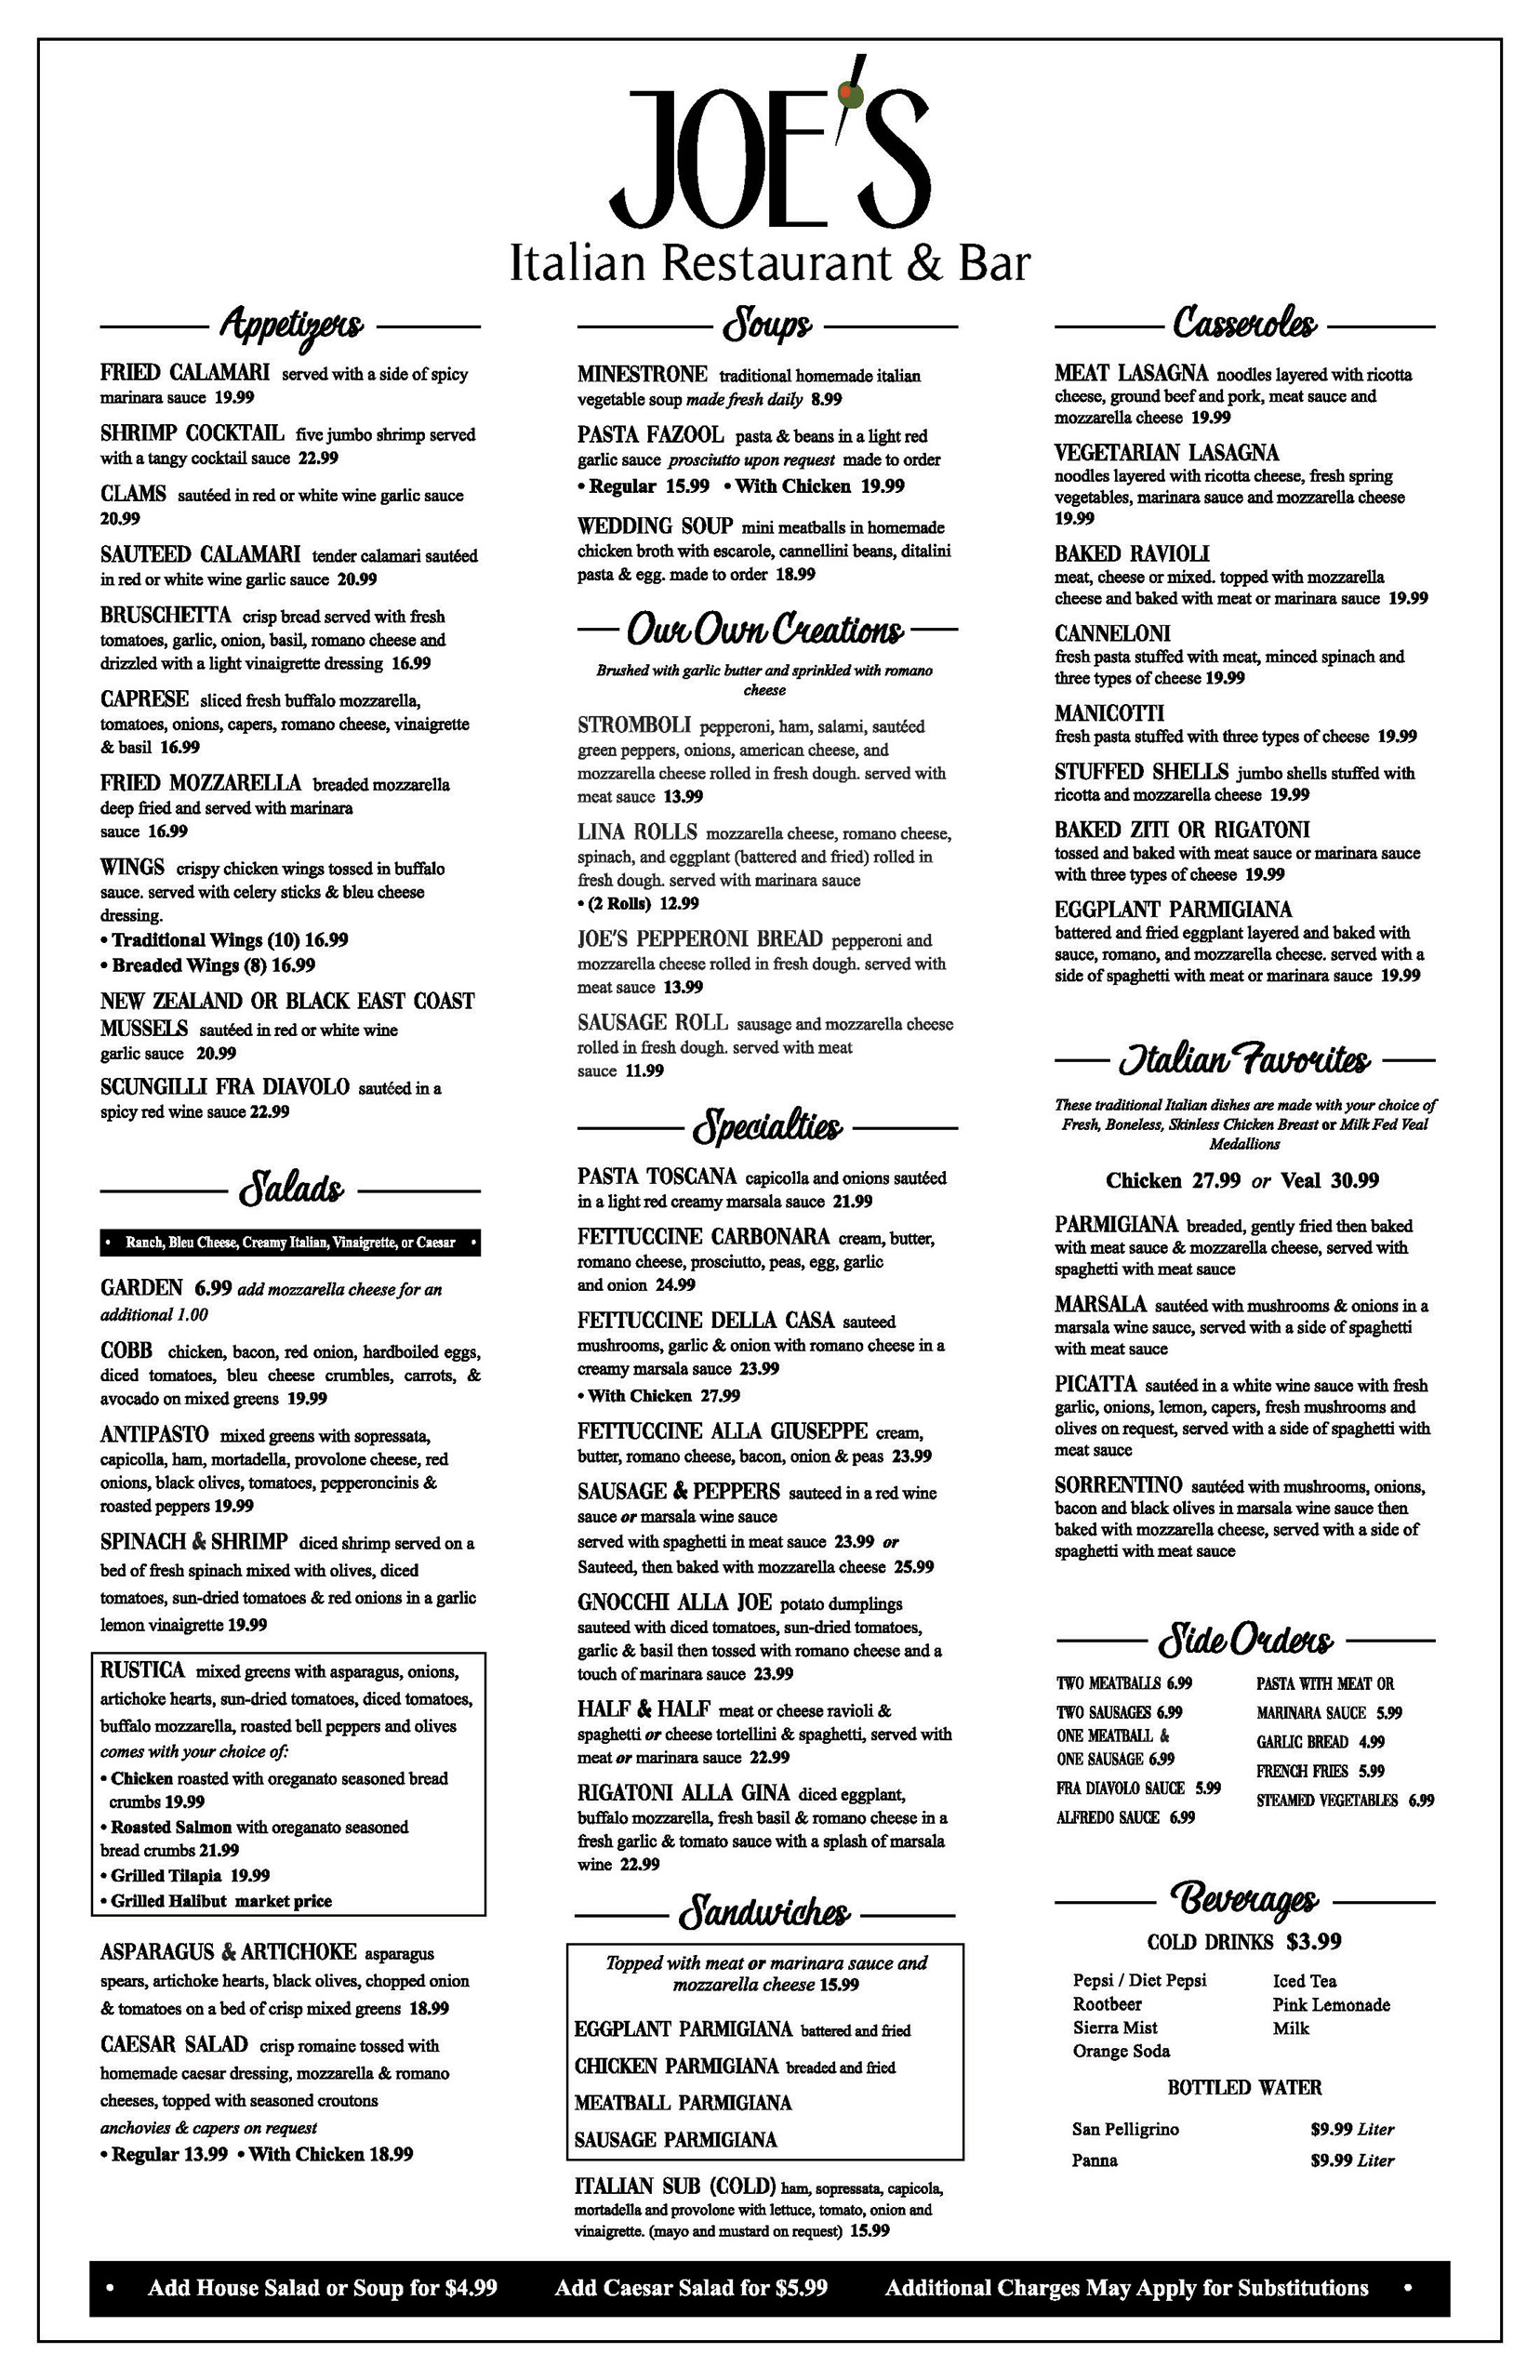 Joe's Italian Restaurant menu